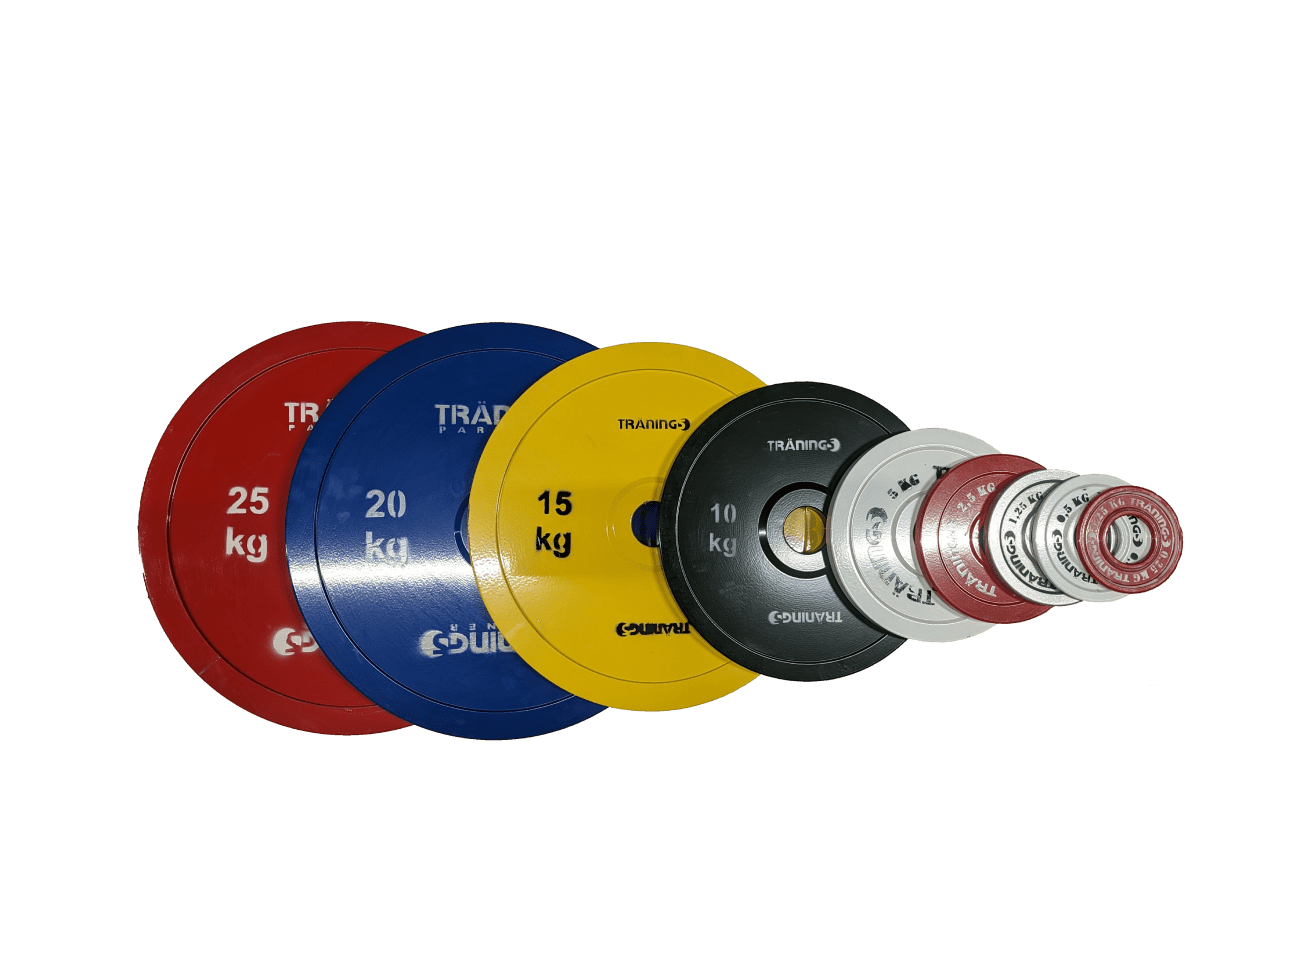 Kalibrerad Metall Powerlifting Discs från 0,25 till 25kg